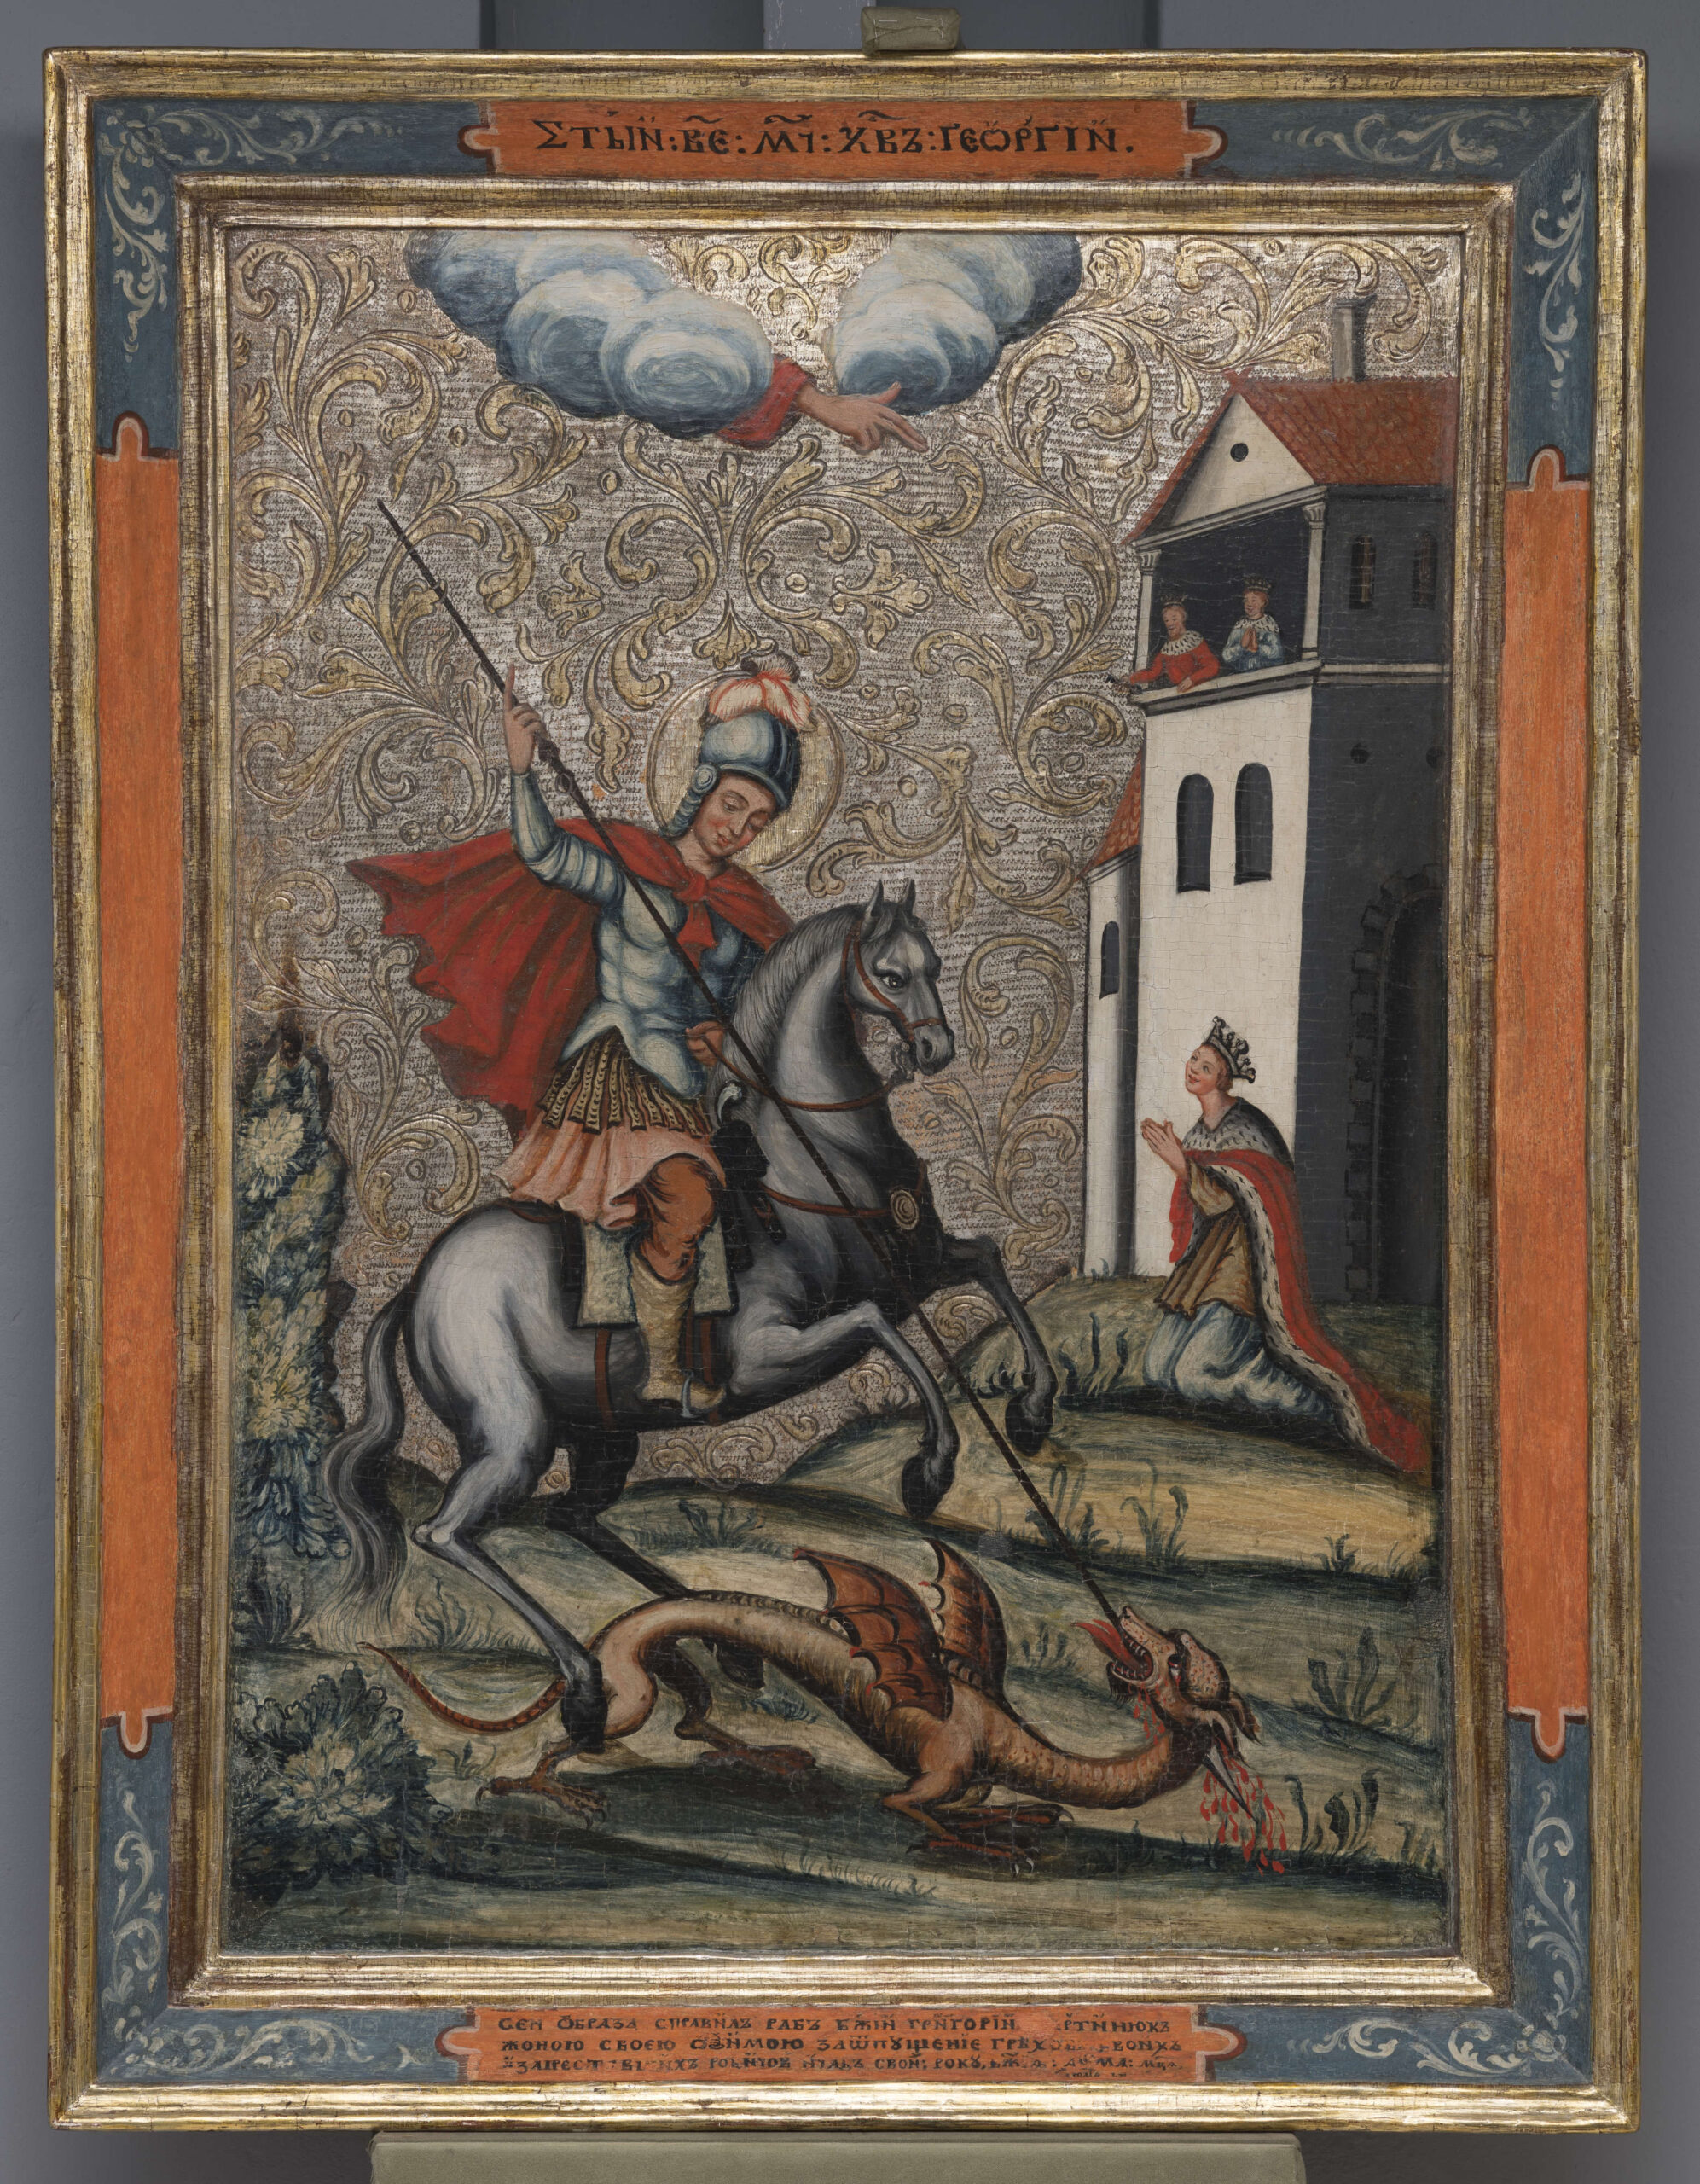 Ikona przedstawia św. Jerzego Męczennika zabijającego smoka. Święty ukazany jest jako konny rycerz: ubrany jest w łososiową tunikę, stalowo-błękitny pancerz z jasnymi pteryges (pasy), brązowe spodnie wpuszczone w szare buty z wysokimi cholewami oraz czerwoną pelerynę. Na otoczonej złotym nimbem głowie ma stalowo-błękitny hełm z jasnoróżowym pióropuszem. Zasiada na siwym koniu, wspiętym na tylnych nogach. Wierzchowiec ma brązową uprząż ze złotym medalionem na piersi. Święty Jerzy lewą dłonią ściąga cugle, w prawej, wzniesionej trzyma długą lancę ze strzemiączkiem, której grotem przebija gardło smoka, wijącego się pod końskimi kopytami. Smok przedstawiony został jako żółtawy wężowaty stwór z błoniastymi skrzydłami, z długą, pokrytą łuskami szyją, ptasimi łapami i ogonem. W tyle po prawej klęczy księżniczka, która wedle legendy przeznaczona była na ofiarę dla smoka i została uratowana przez świętego. Ubrana jest w błękitną suknię, ziemistą tunikę i czerwony płaszcz obszyty futrem, na głowie ma koronę. Dłonie trzyma złożone, spogląda ku górze, gdzie spośród kręgu obłoków wychyla się błogosławiąca dłoń w czerwonym rękawie - Manus Dei. Za postacią księżniczki widoczne są zabudowania miejskie. W loggii widoczna jest para królewska, z koronami na głowach: królowa ma złożone dłonie, ubrana jest w błękitną szatę obszytą gronostajami, król ma szatę czerwoną, również z gronostajami, w prawej wyciągniętej dłoni trzyma klucz. Tło do wysokości zabudowań wypełnia pofałdowany krajobraz ze schematycznie ukazaną roślinnością; powyżej zdobione jest rytym ornamentem roślinnym i chwiejakowaniem oraz jest srebrzone ze śladami złotego lakieru. Całość ujęta jest w rozglifioną, profilowaną ramę na której umieszczono cyrylickie napisy: podpis przedstawienia i inskrypcję fundacyjną. Ikona wzmocniona jest dwiema szpongami wsuwanymi jednostronnie, łączenia